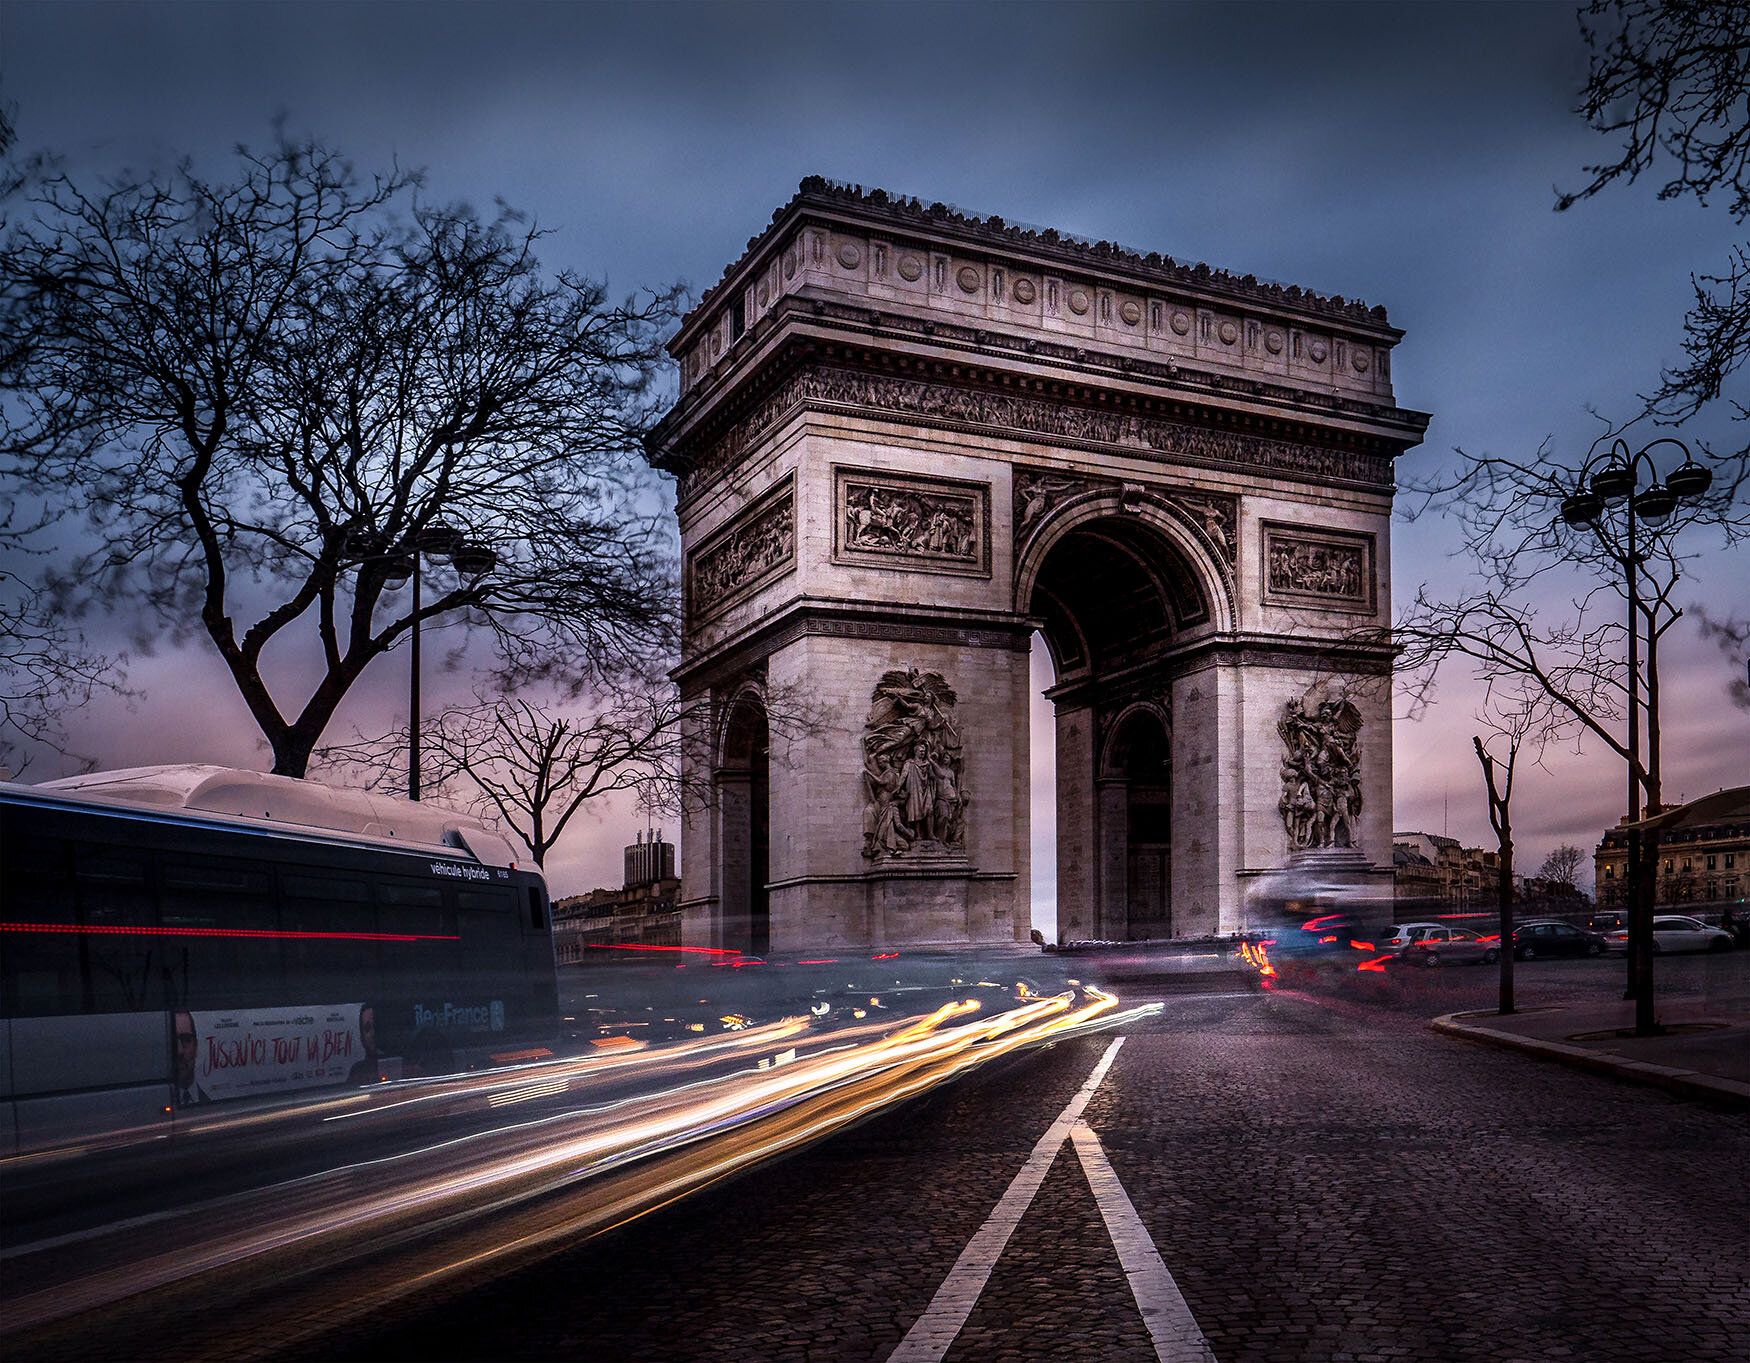 arc-de-triomphe-paris-city-beautiful-photo-wallpaper-by-anton-alymov.jpg